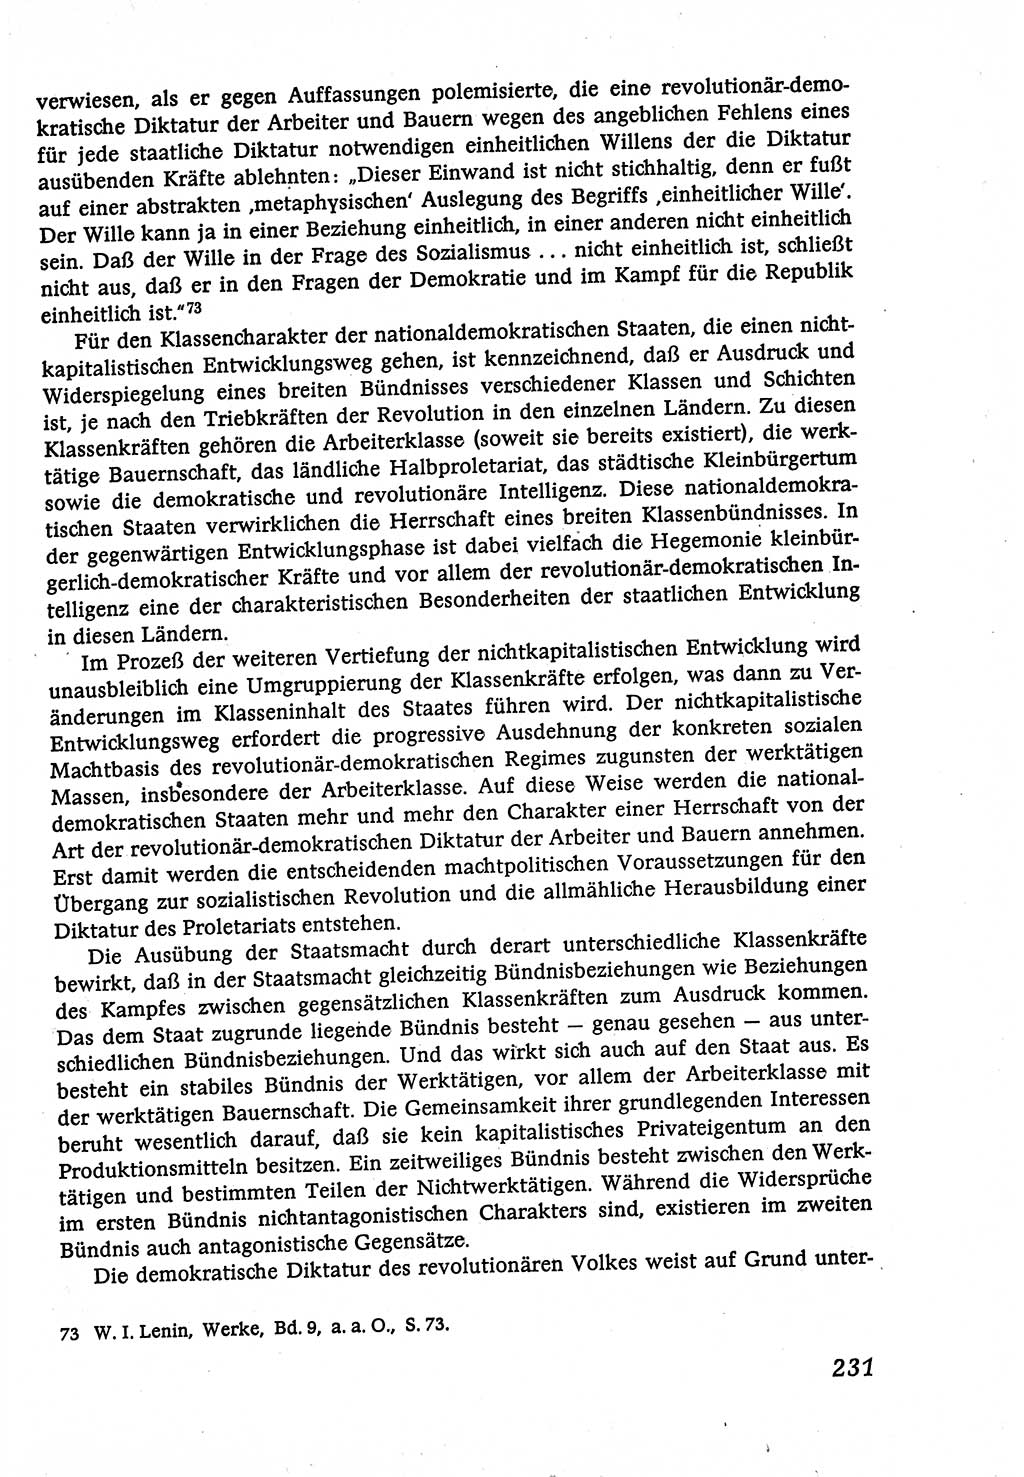 Marxistisch-leninistische (ML) Staats- und Rechtstheorie [Deutsche Demokratische Republik (DDR)], Lehrbuch 1980, Seite 231 (ML St.-R.-Th. DDR Lb. 1980, S. 231)